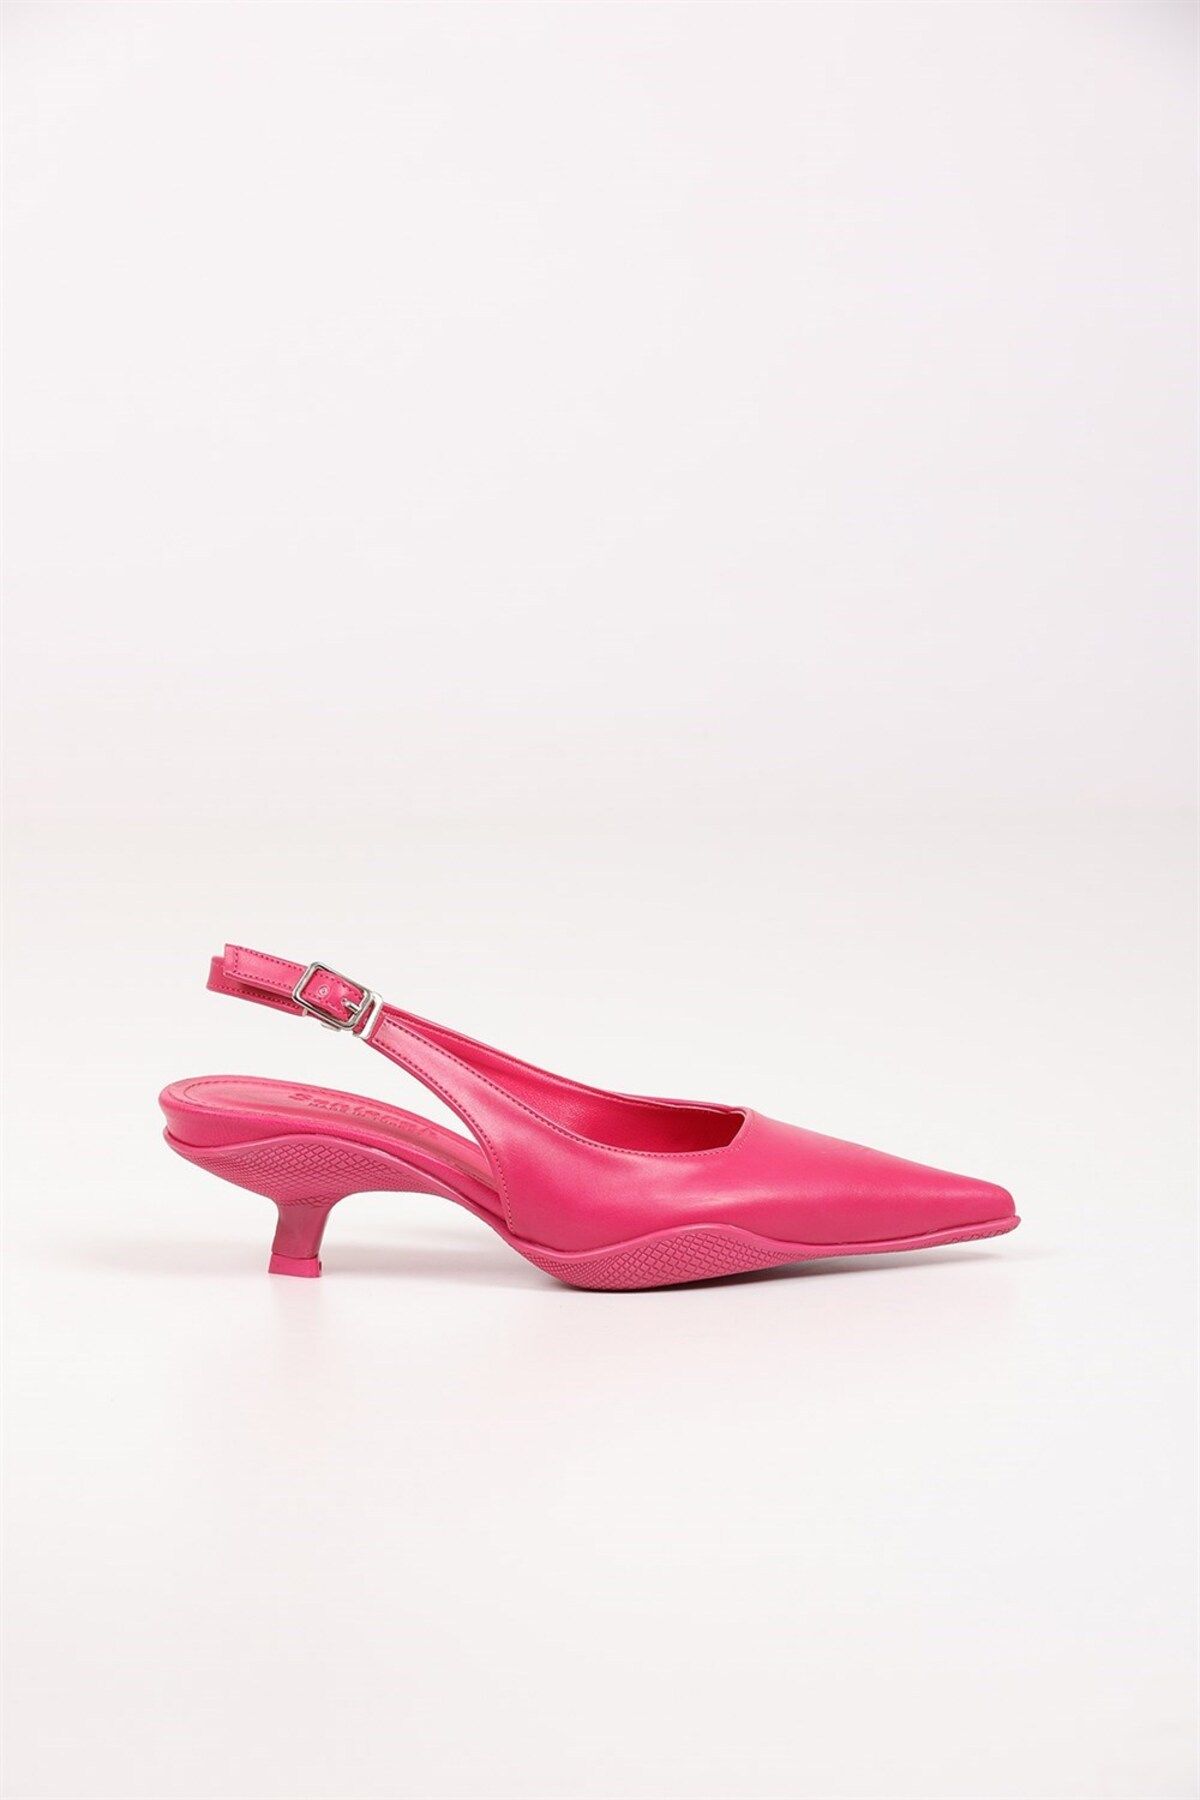 Seniorah Zenas Fuşya Cilt Kadın Topuklu Ayakkabı